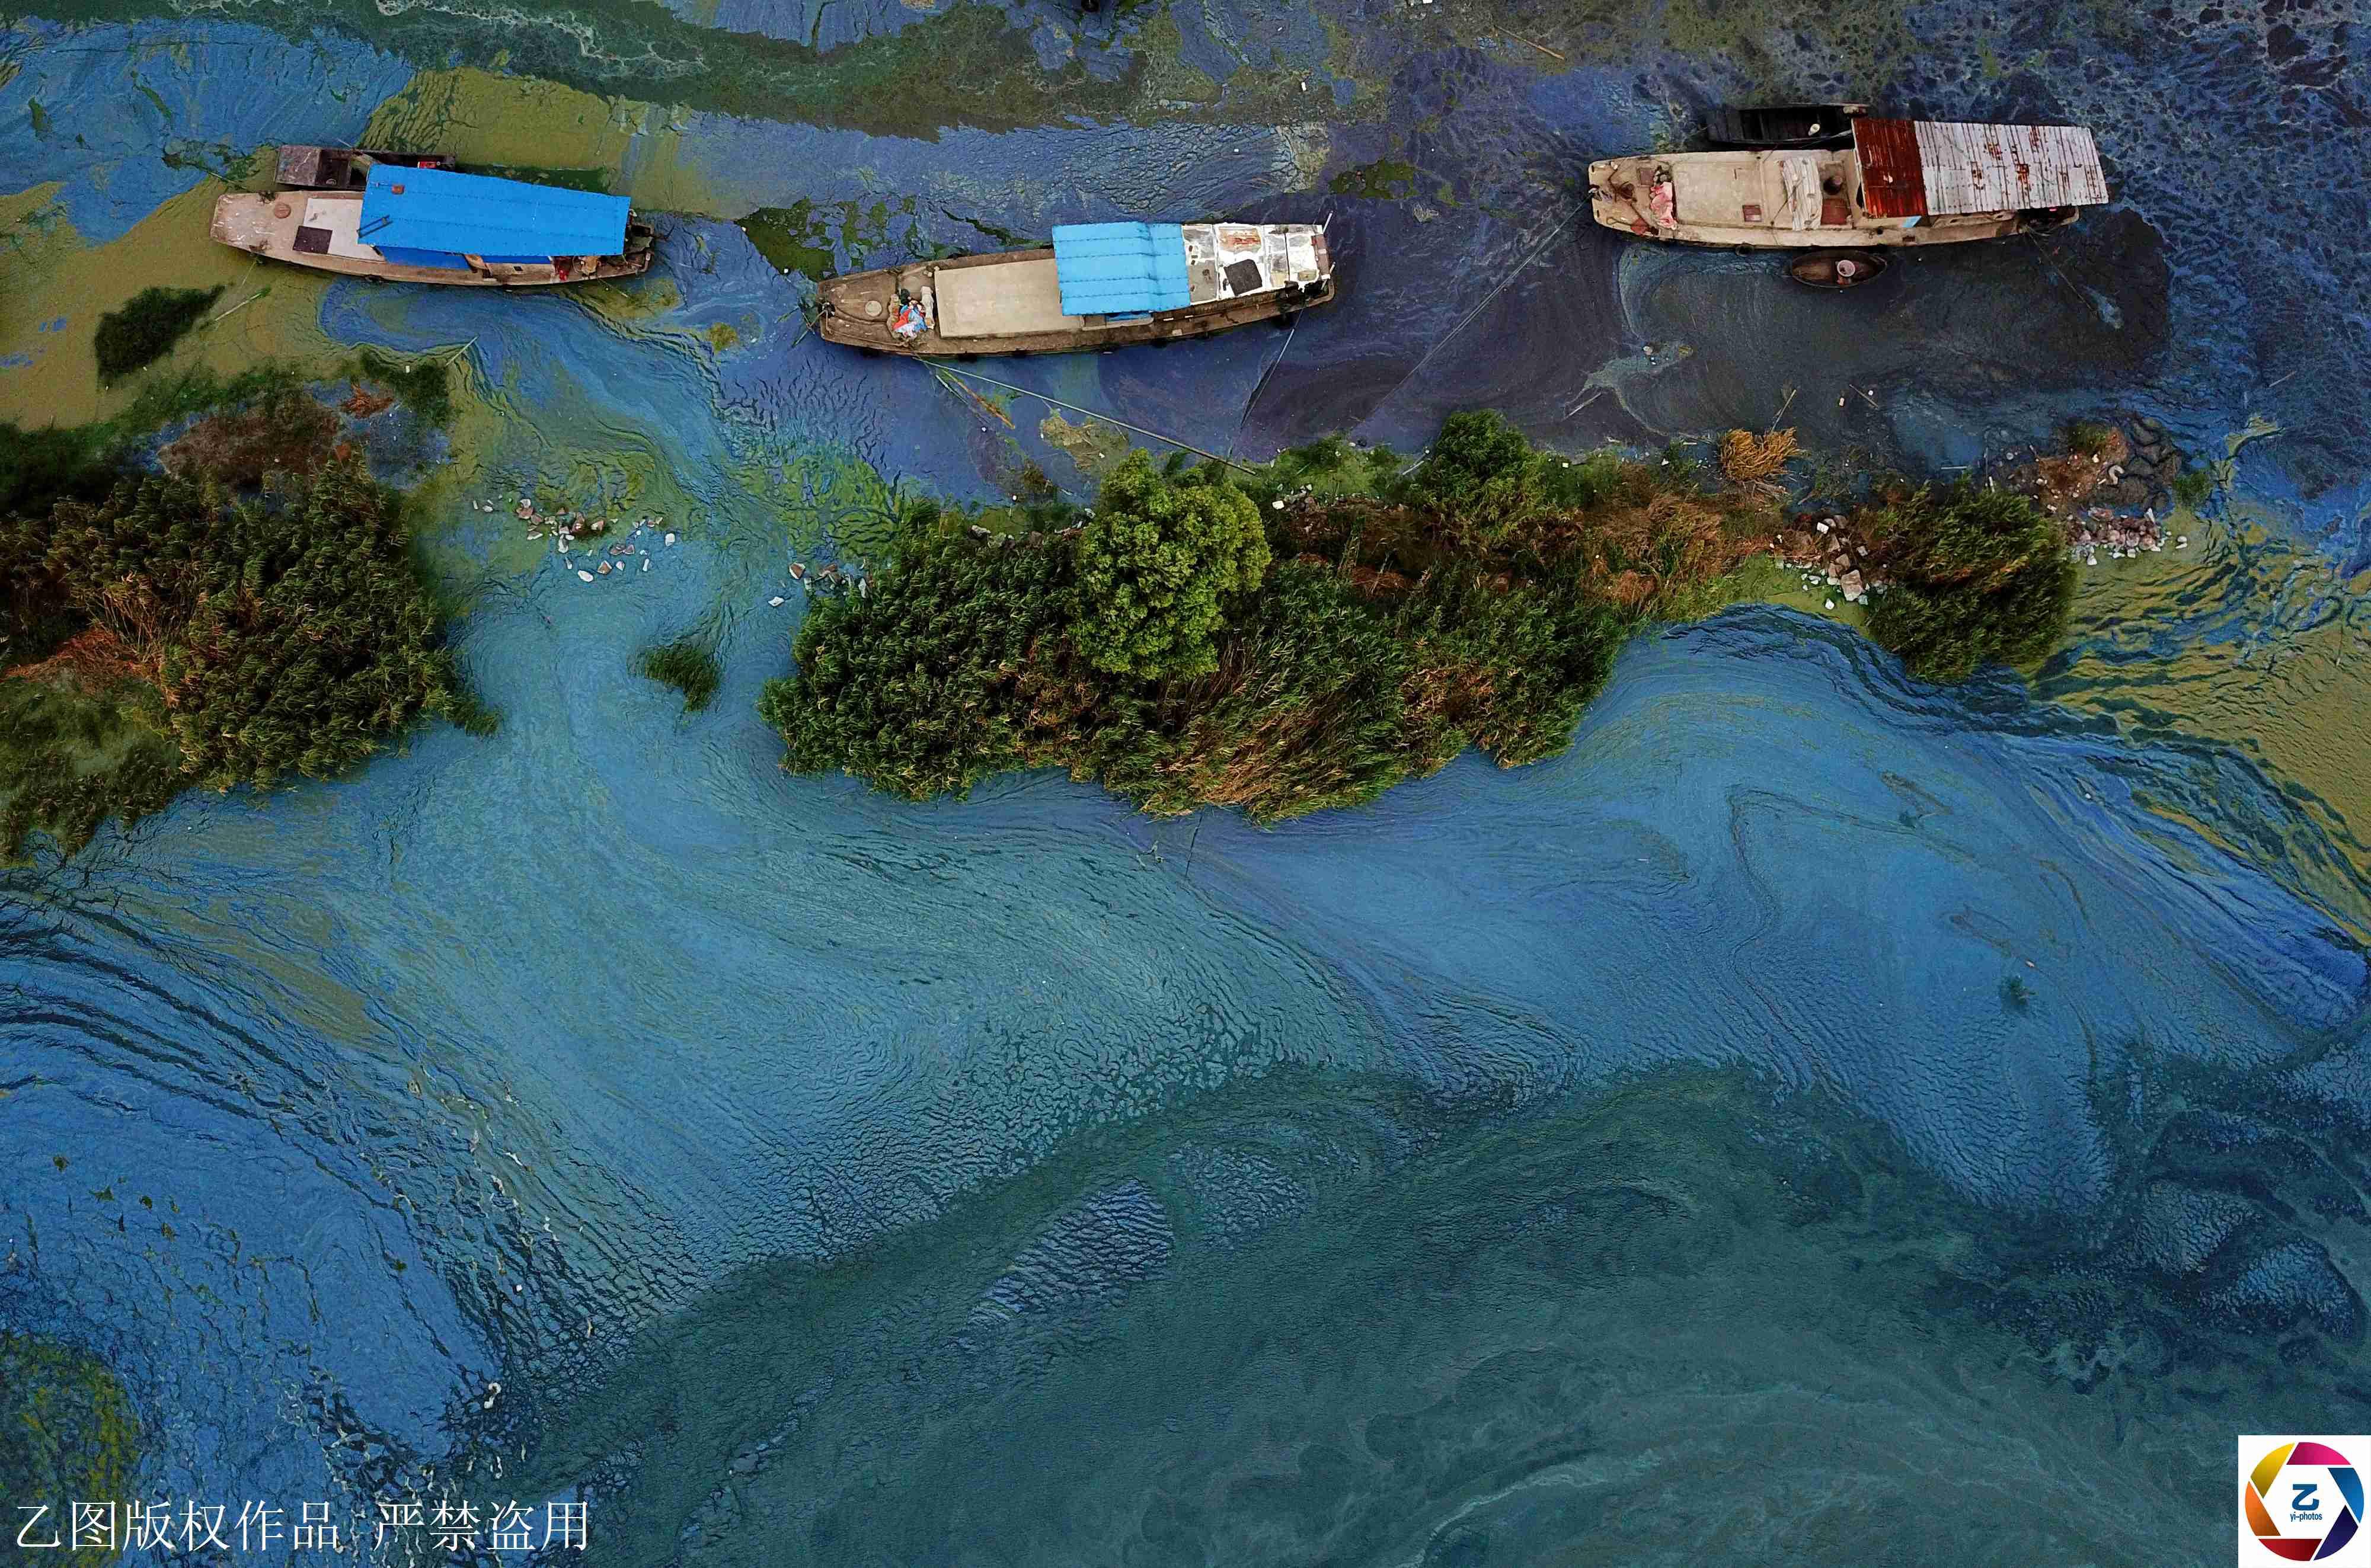 航拍高温下巢湖蓝藻, 如绿色画卷十分壮观, 打捞队加班作业